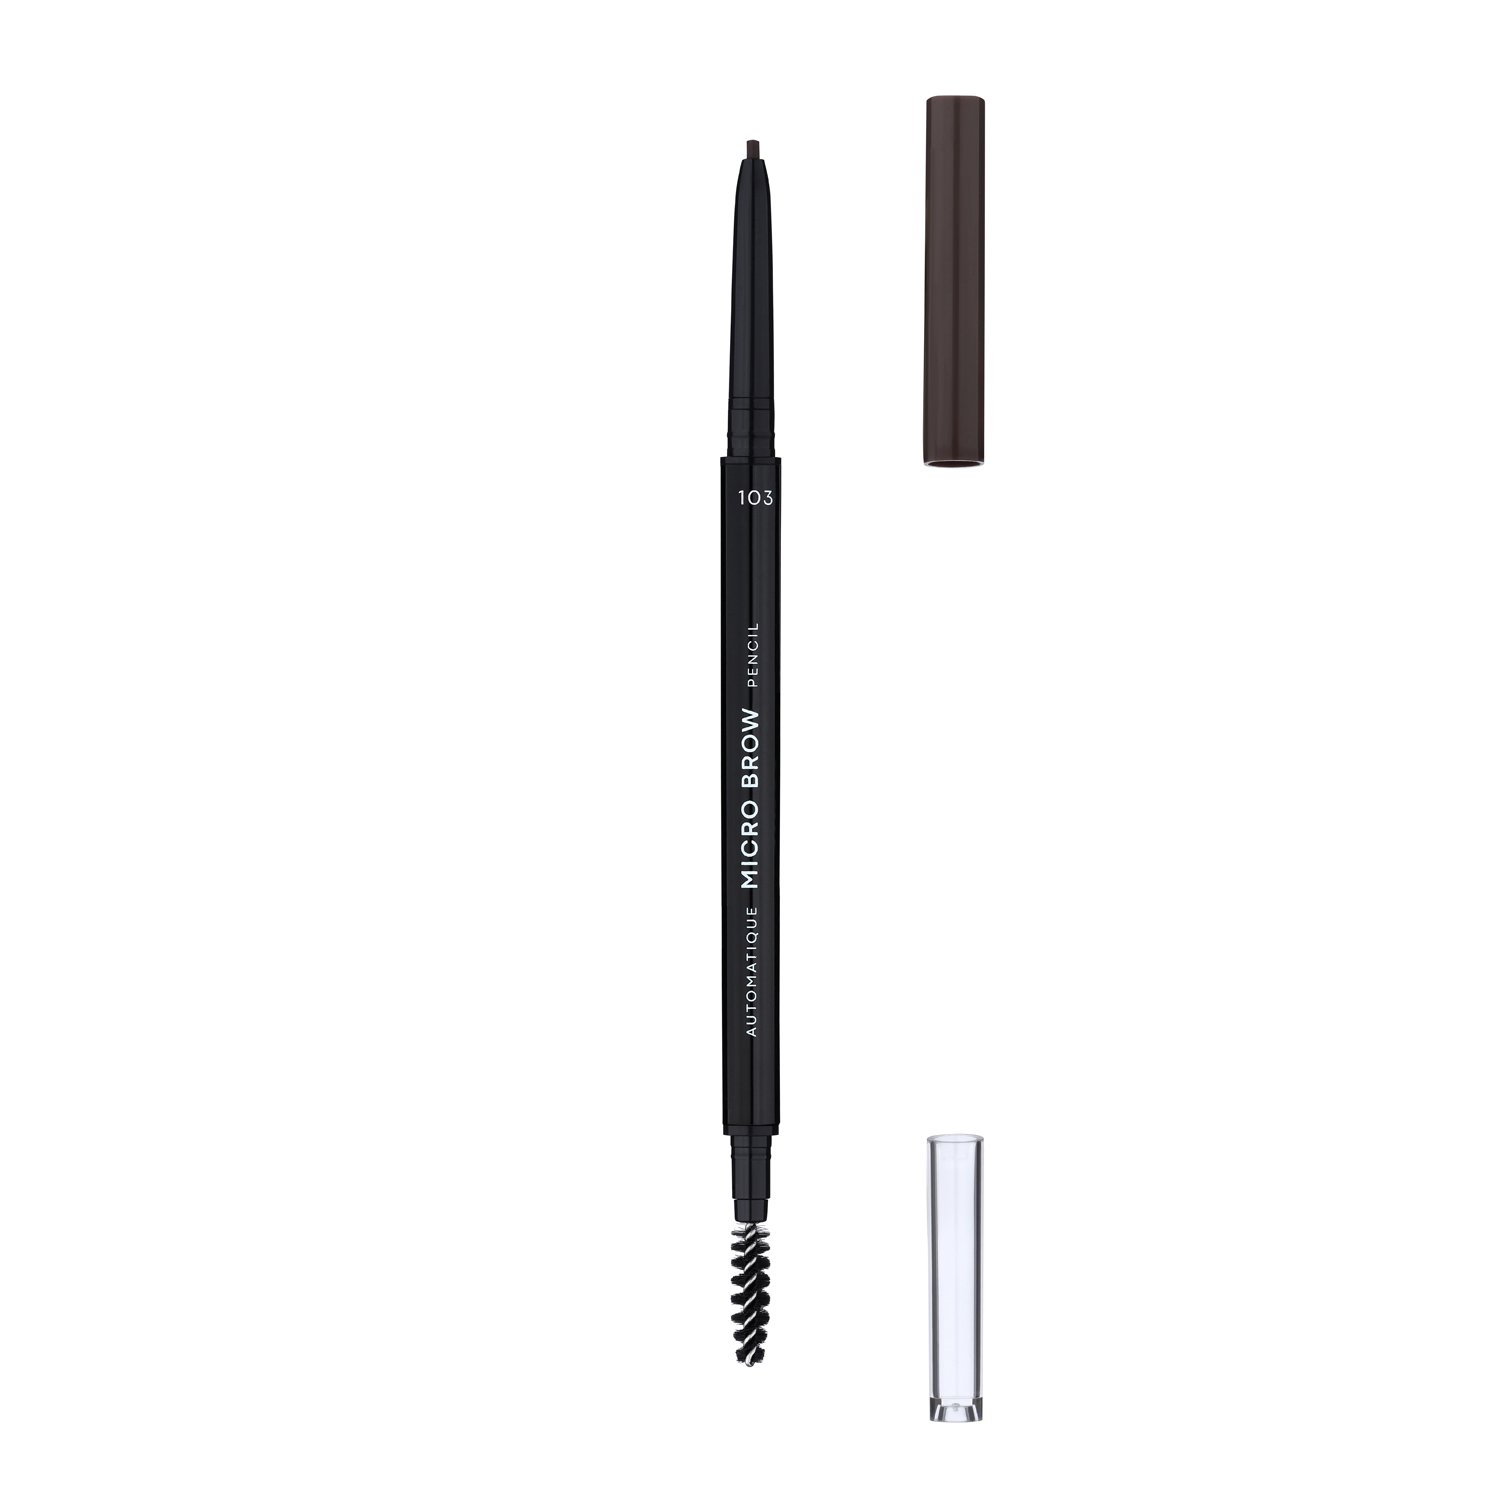 Олівець для брів LN Professional Micro Brow Pencil тон 103, 0.12 г - фото 2